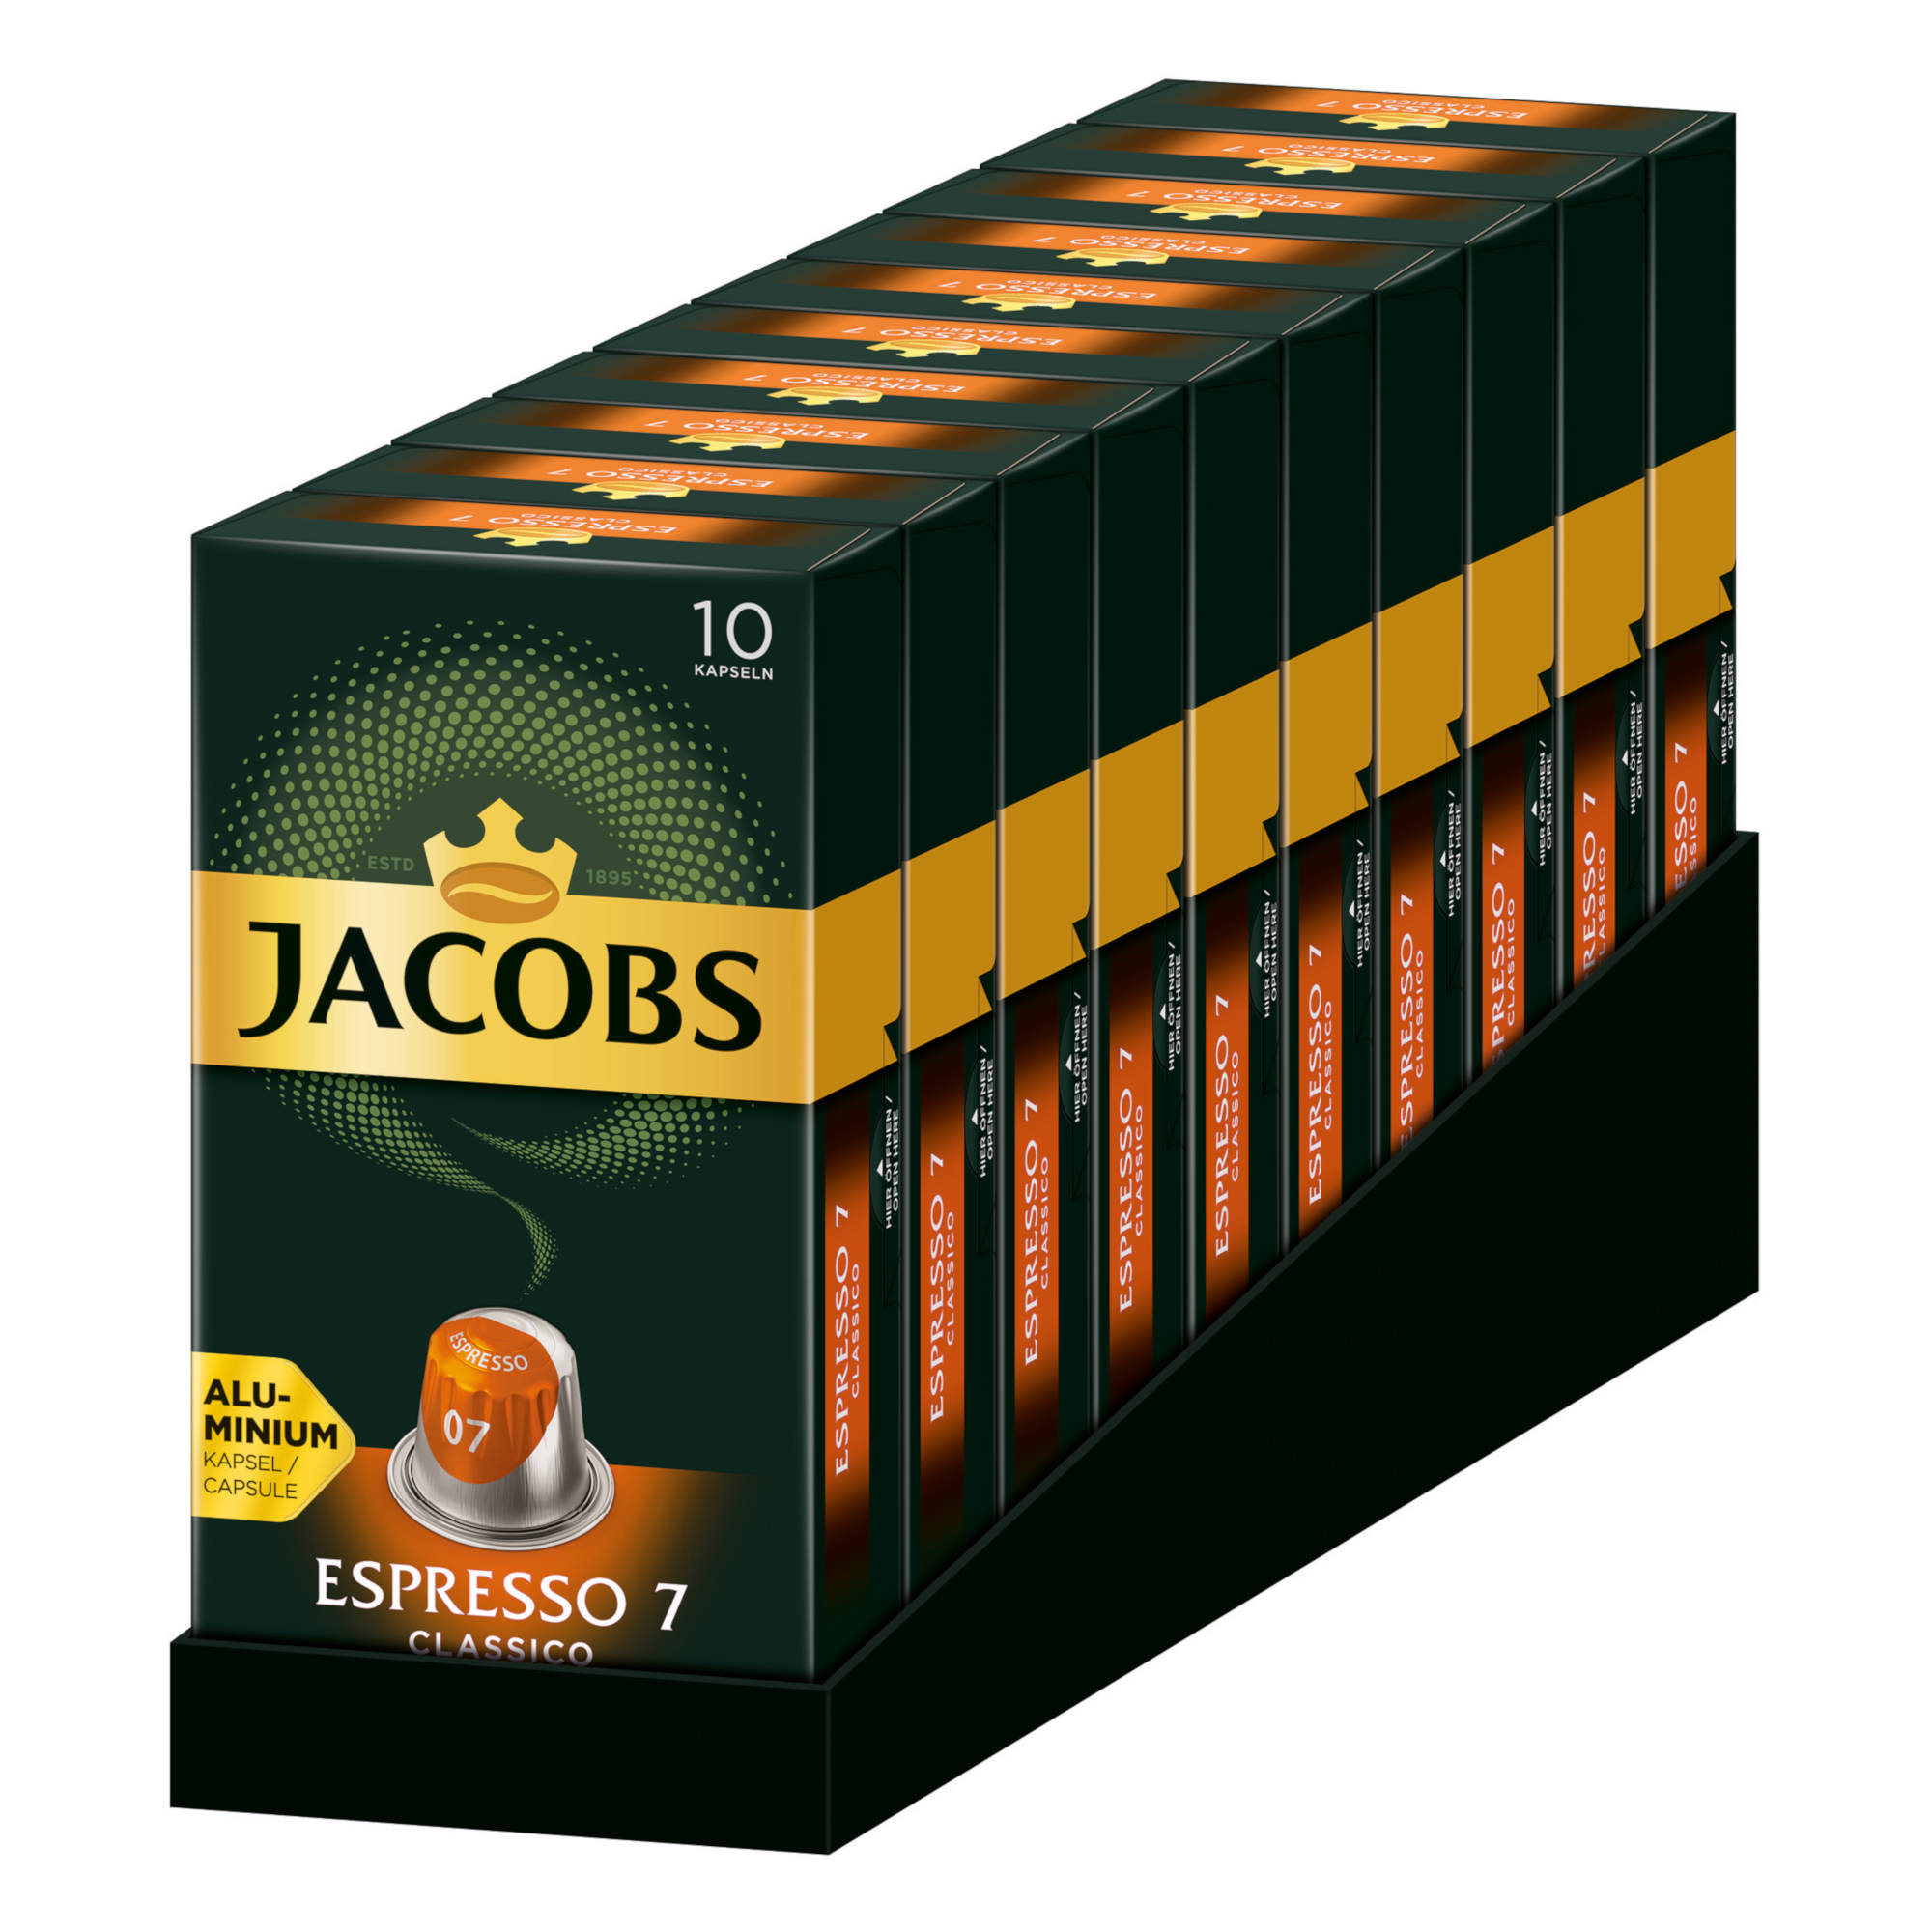 (Nespresso x Nespresso®* System) Espresso 7 Classico kompatible 10 10 JACOBS Kaffeekapseln